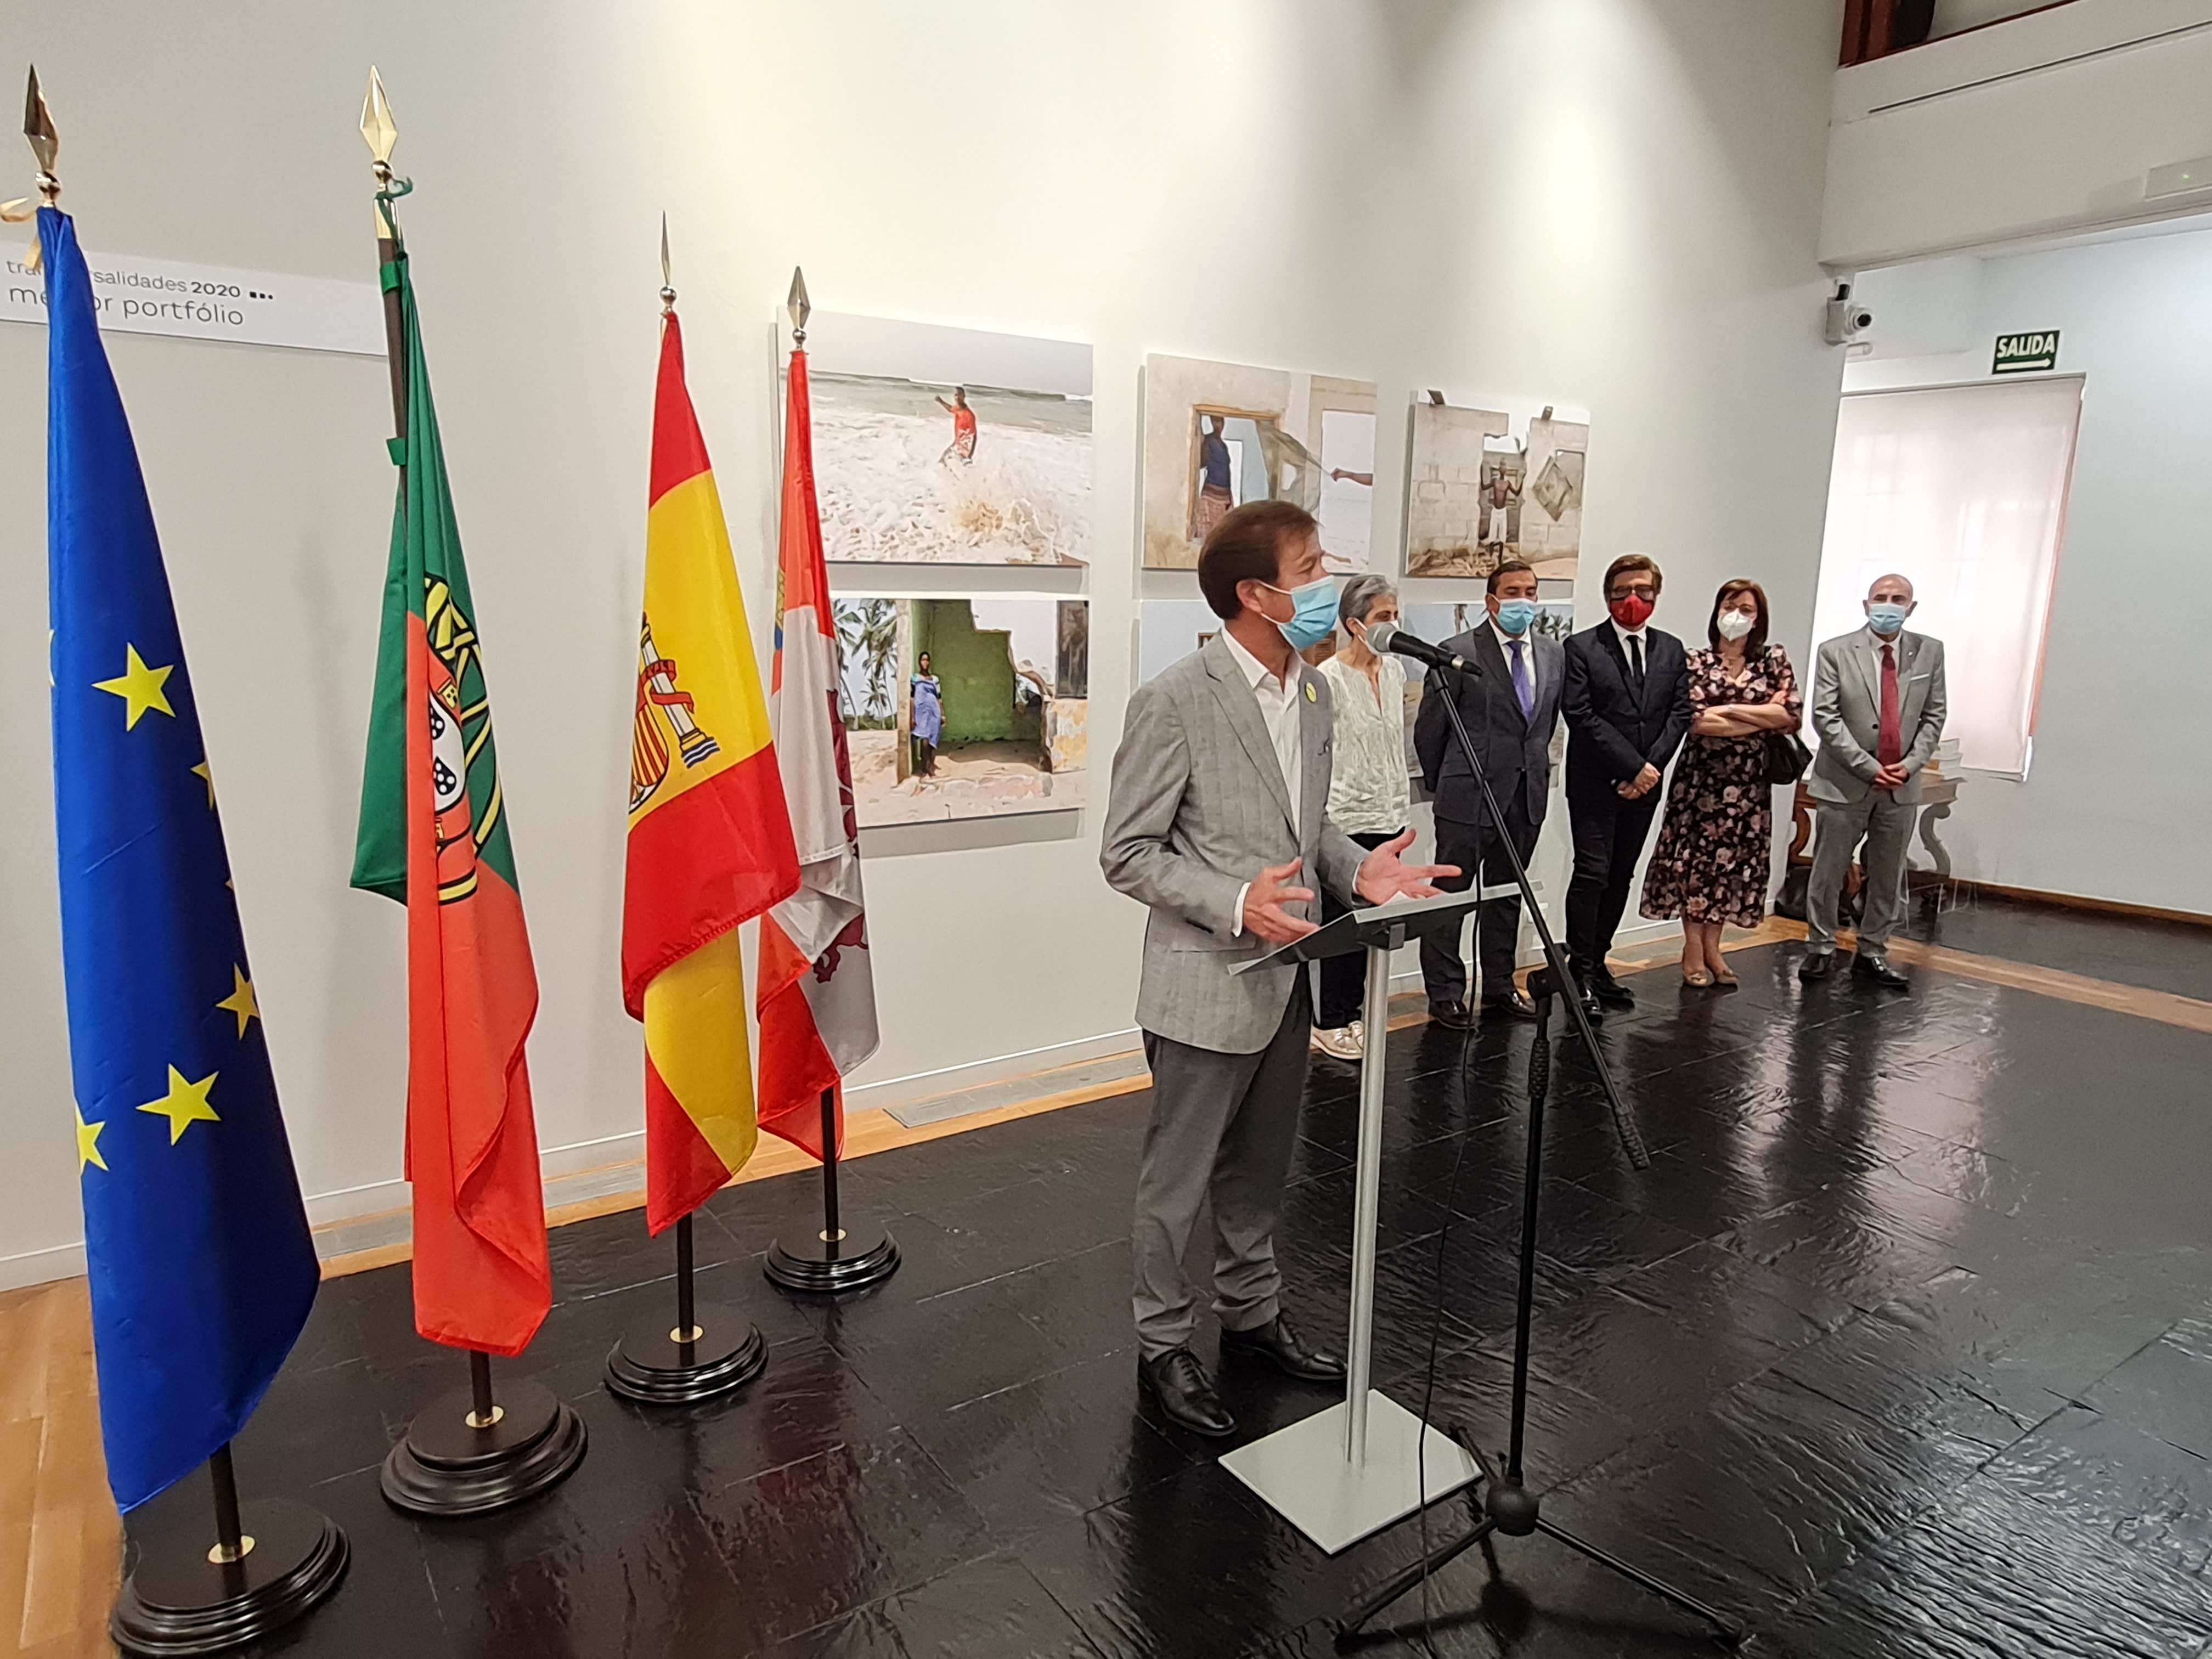 La Universidad de Salamanca y el Museo de Salamanca muestran un ejemplo de cooperación e inclusión de los territorios a través de la exposición fotográfica “Transversalidades”